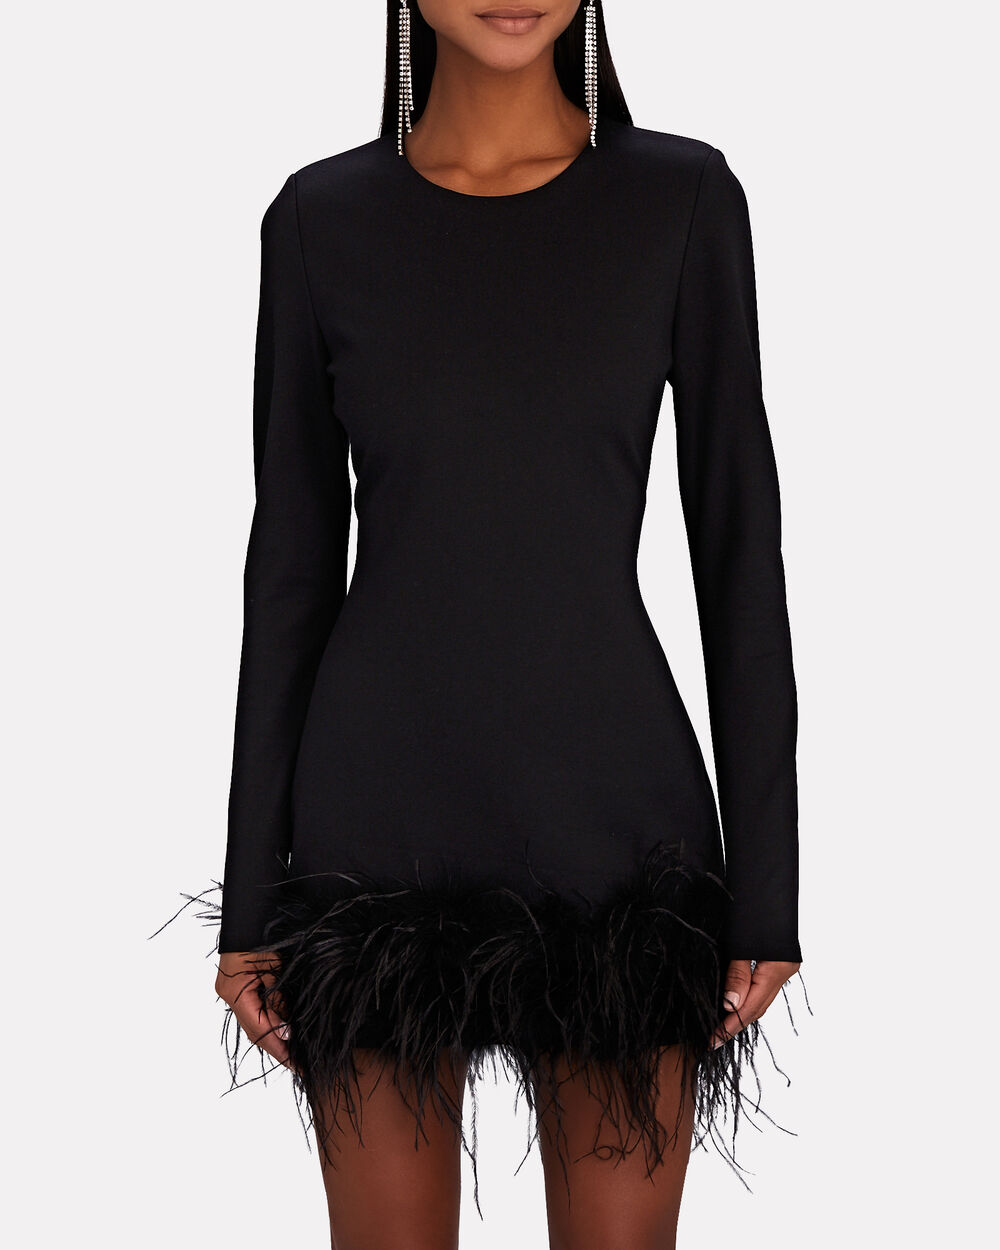 Defiant Boutique Black Feather Trim Mini Dress Large